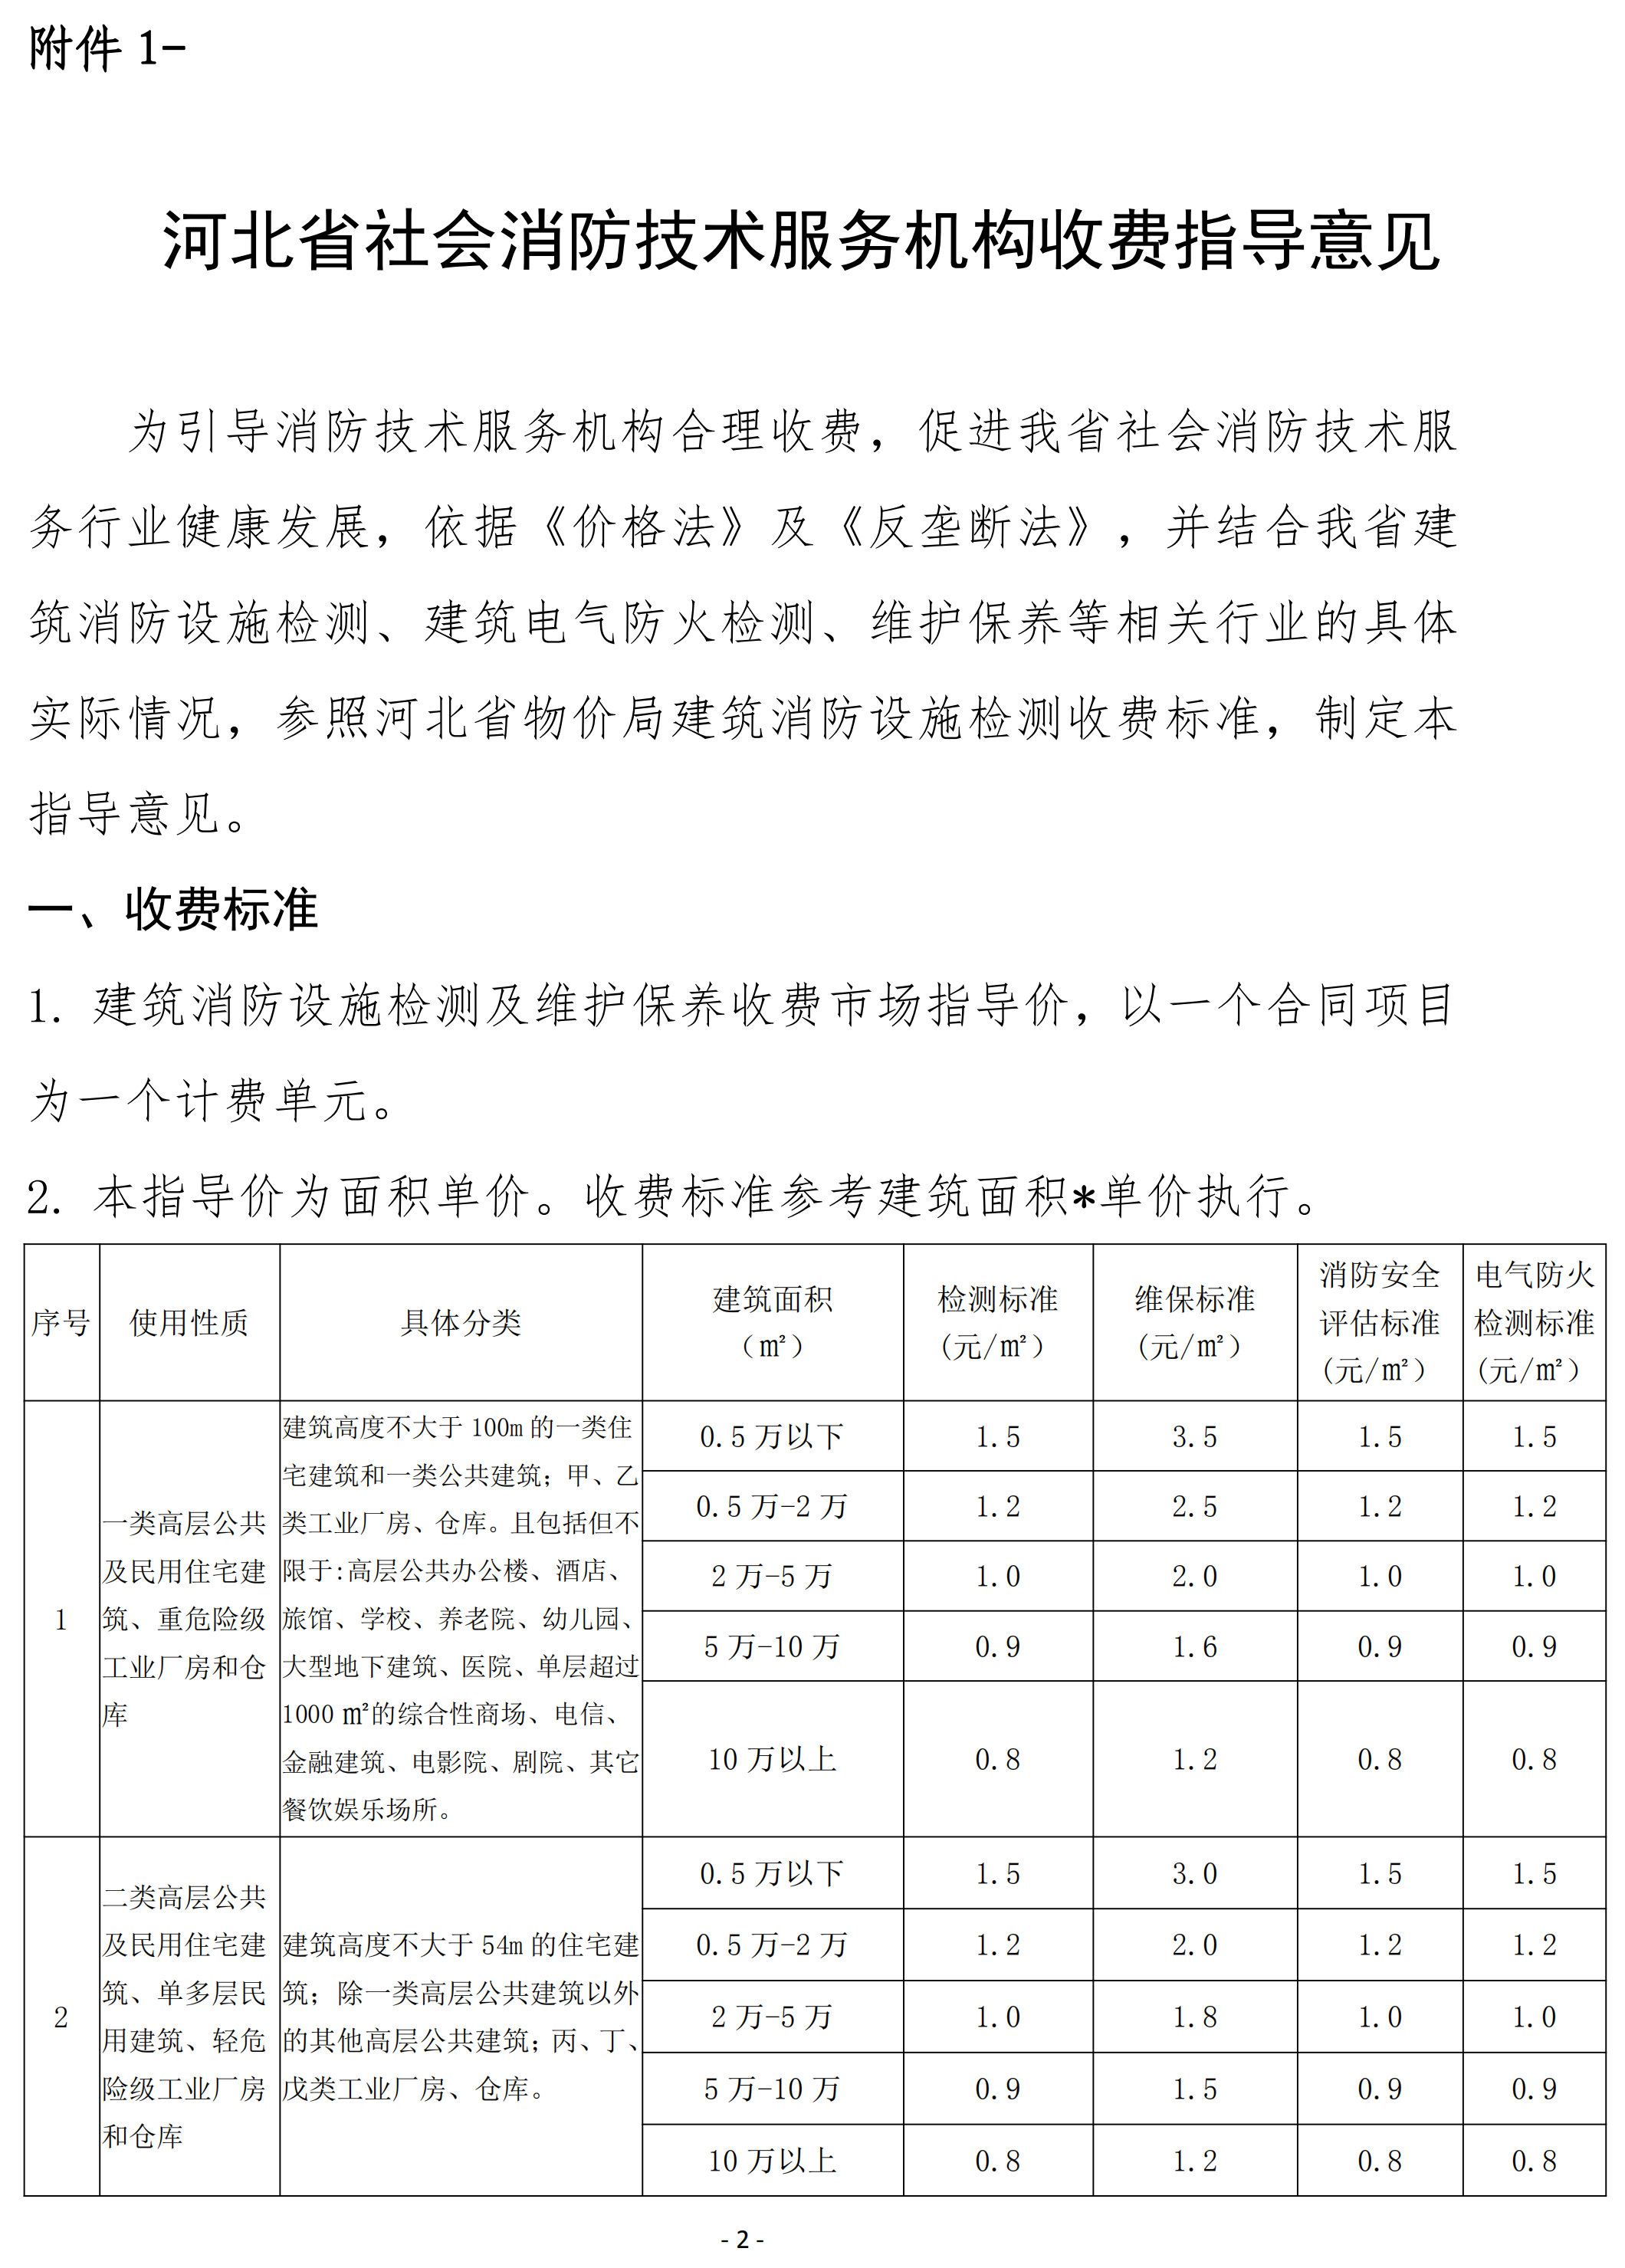 河北省社会消防技术服务机构收费指导意见